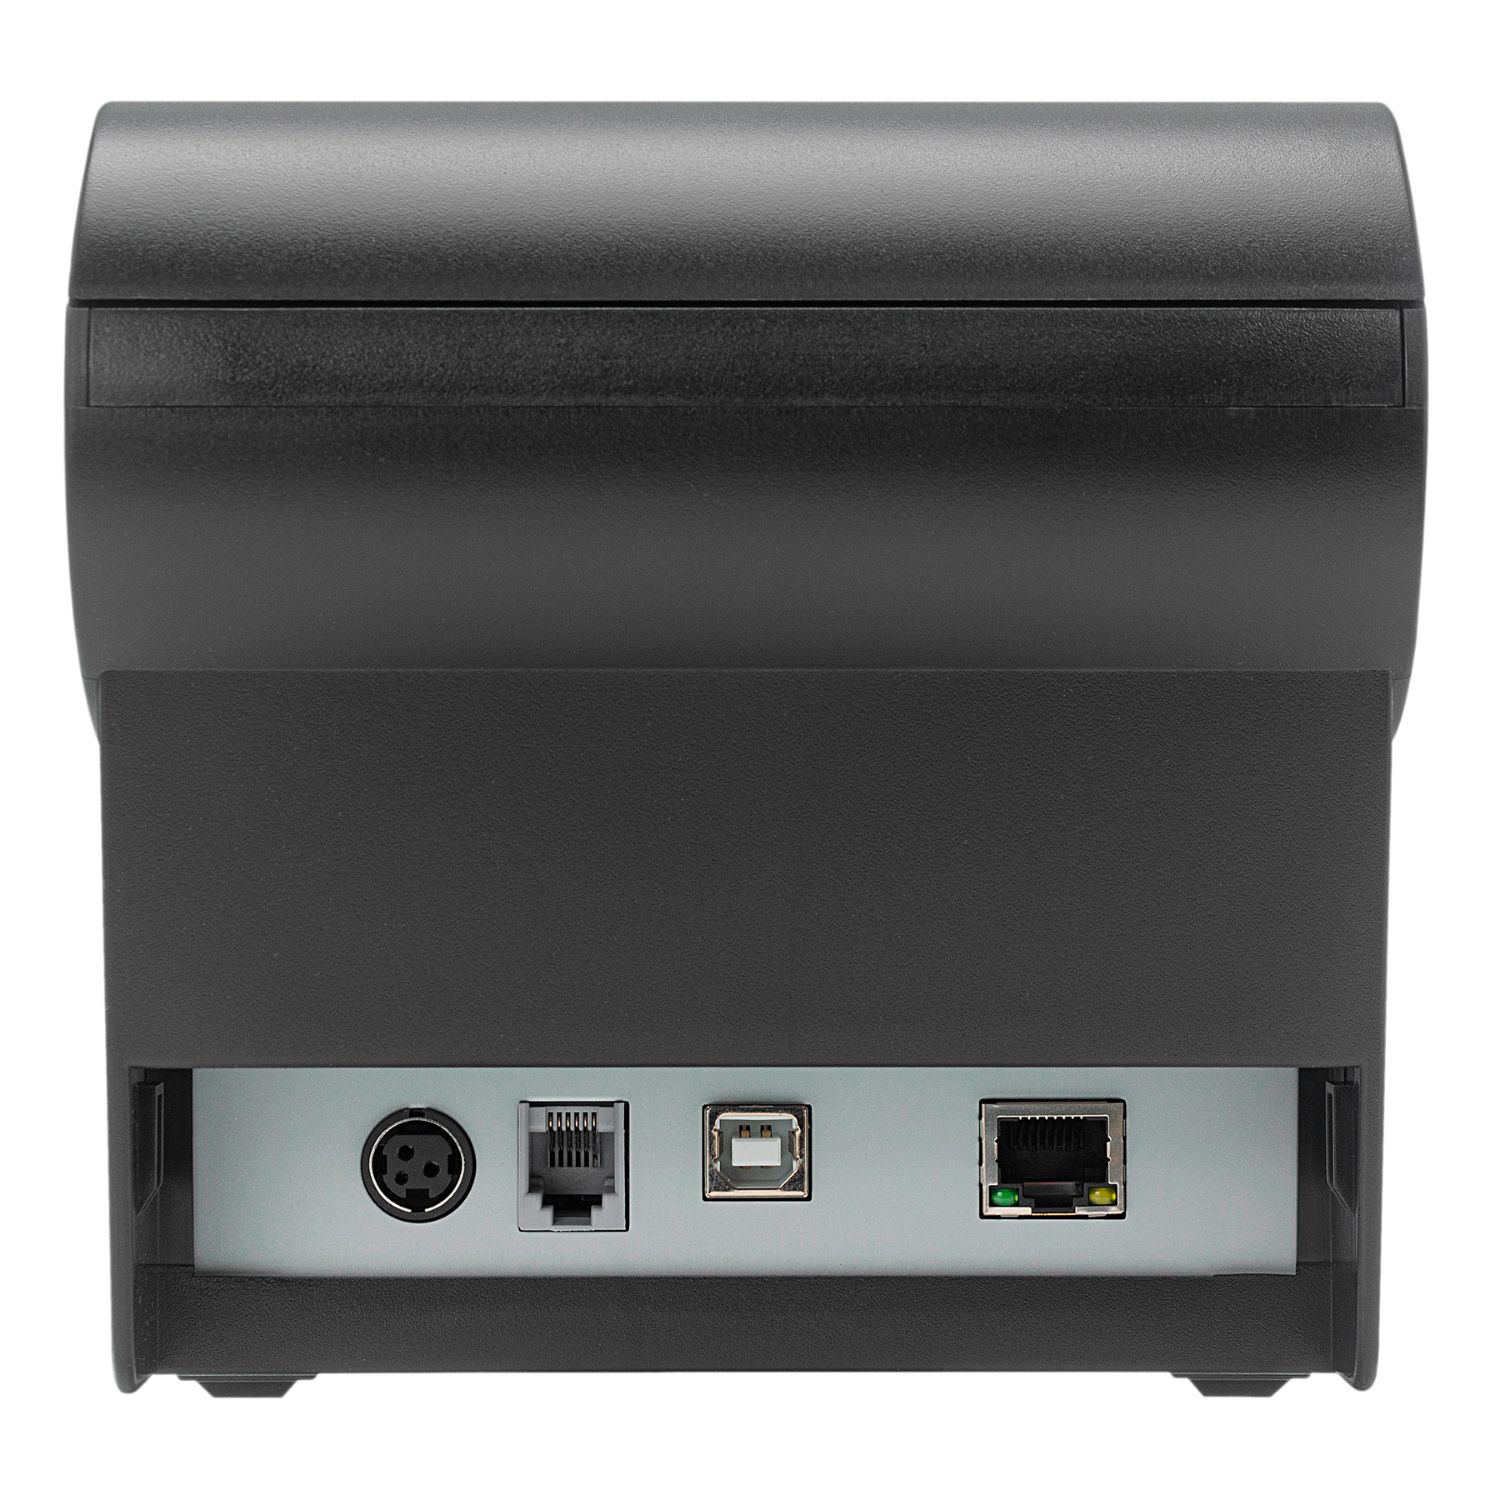 UK56009 - Impresora Trmica UNYKA POS5 80mm USB-B Ethernet LAN RJ11/RJ12 Negra (UK56009)